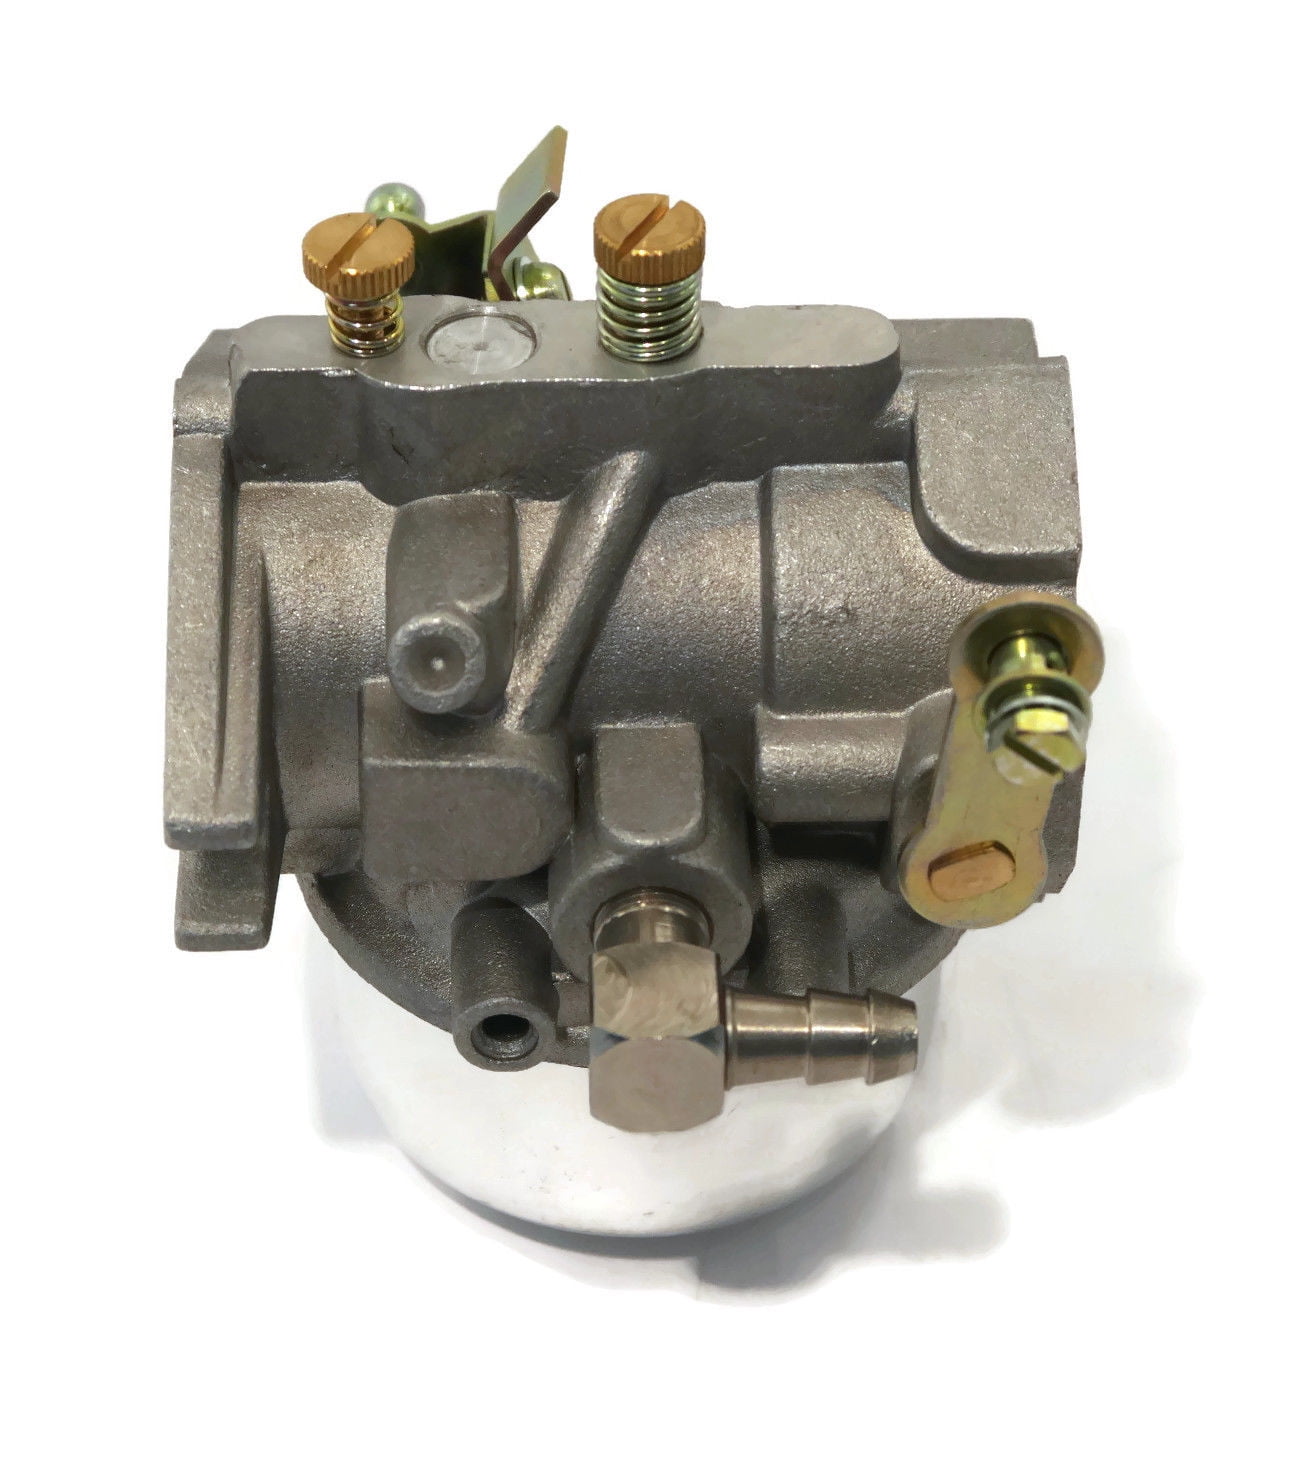 Carburetor Carb w/Gasket Fits John Deere MIA10308 AM36146 23 HP Lawnmower Engine